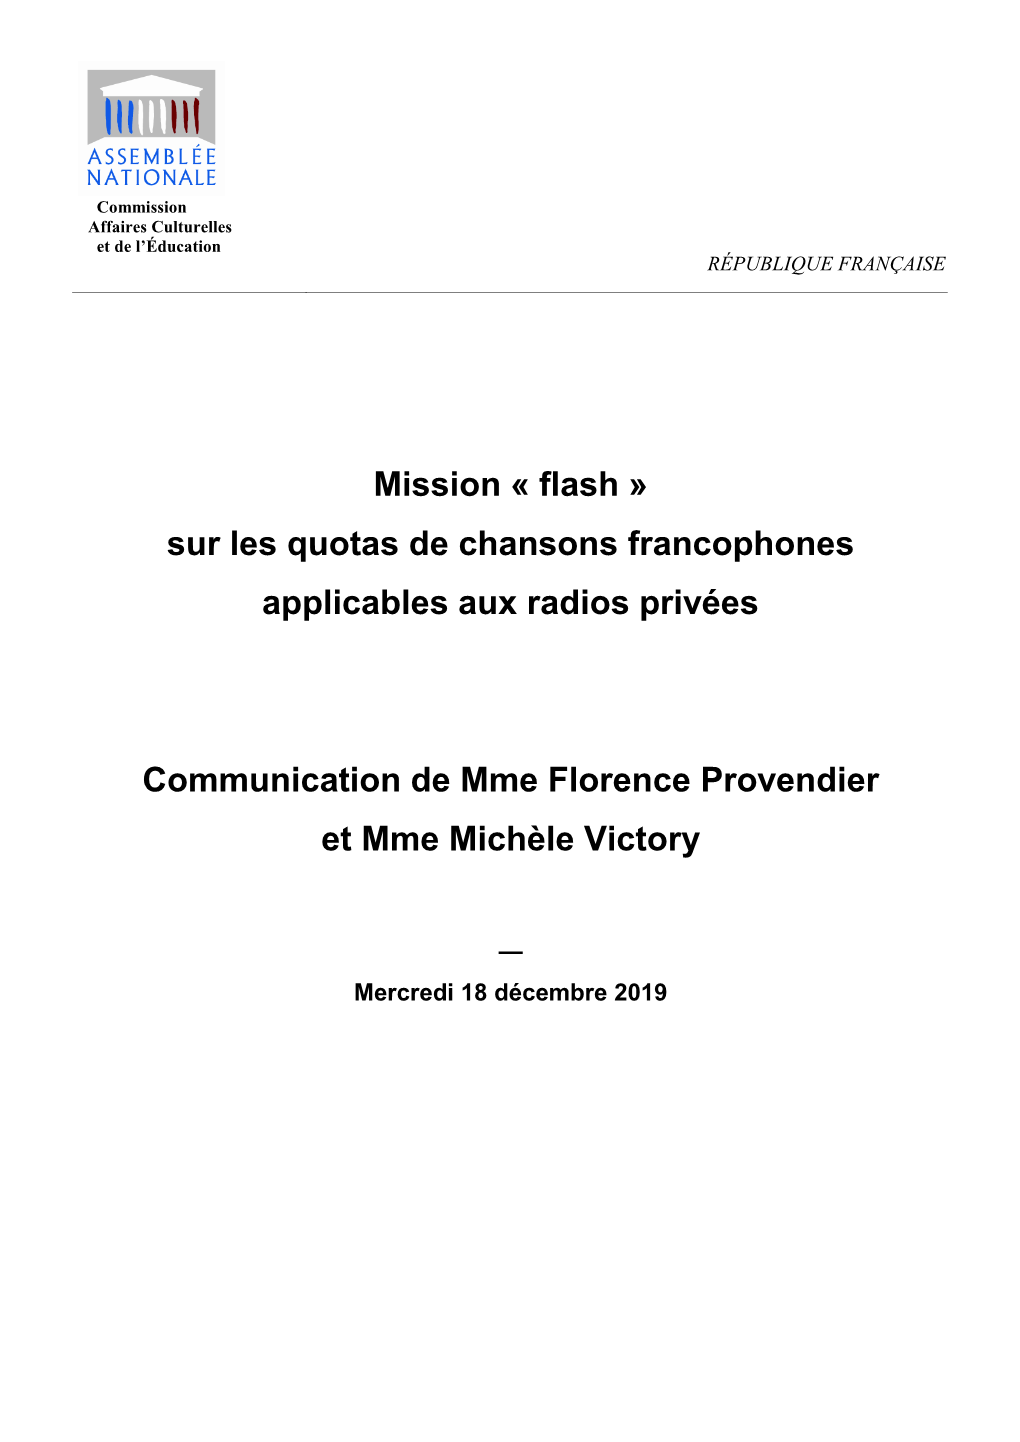 Mission « Flash » Sur Les Quotas De Chansons Francophones Applicables Aux Radios Privées